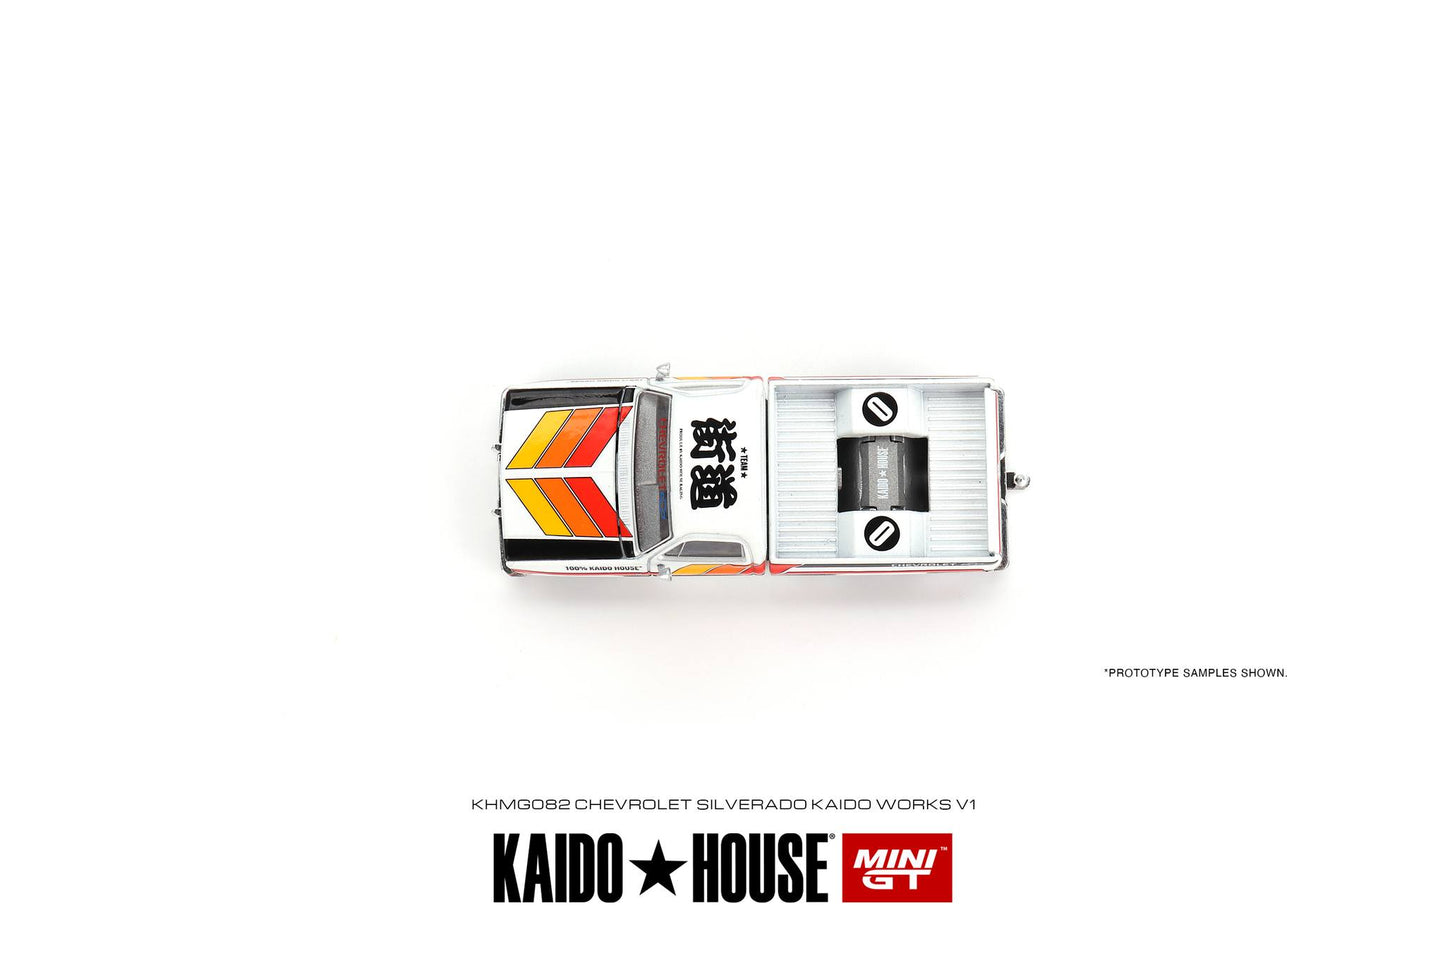 Mini GT x Kaido House 1983 Chevy Silverado Kaido Works V1